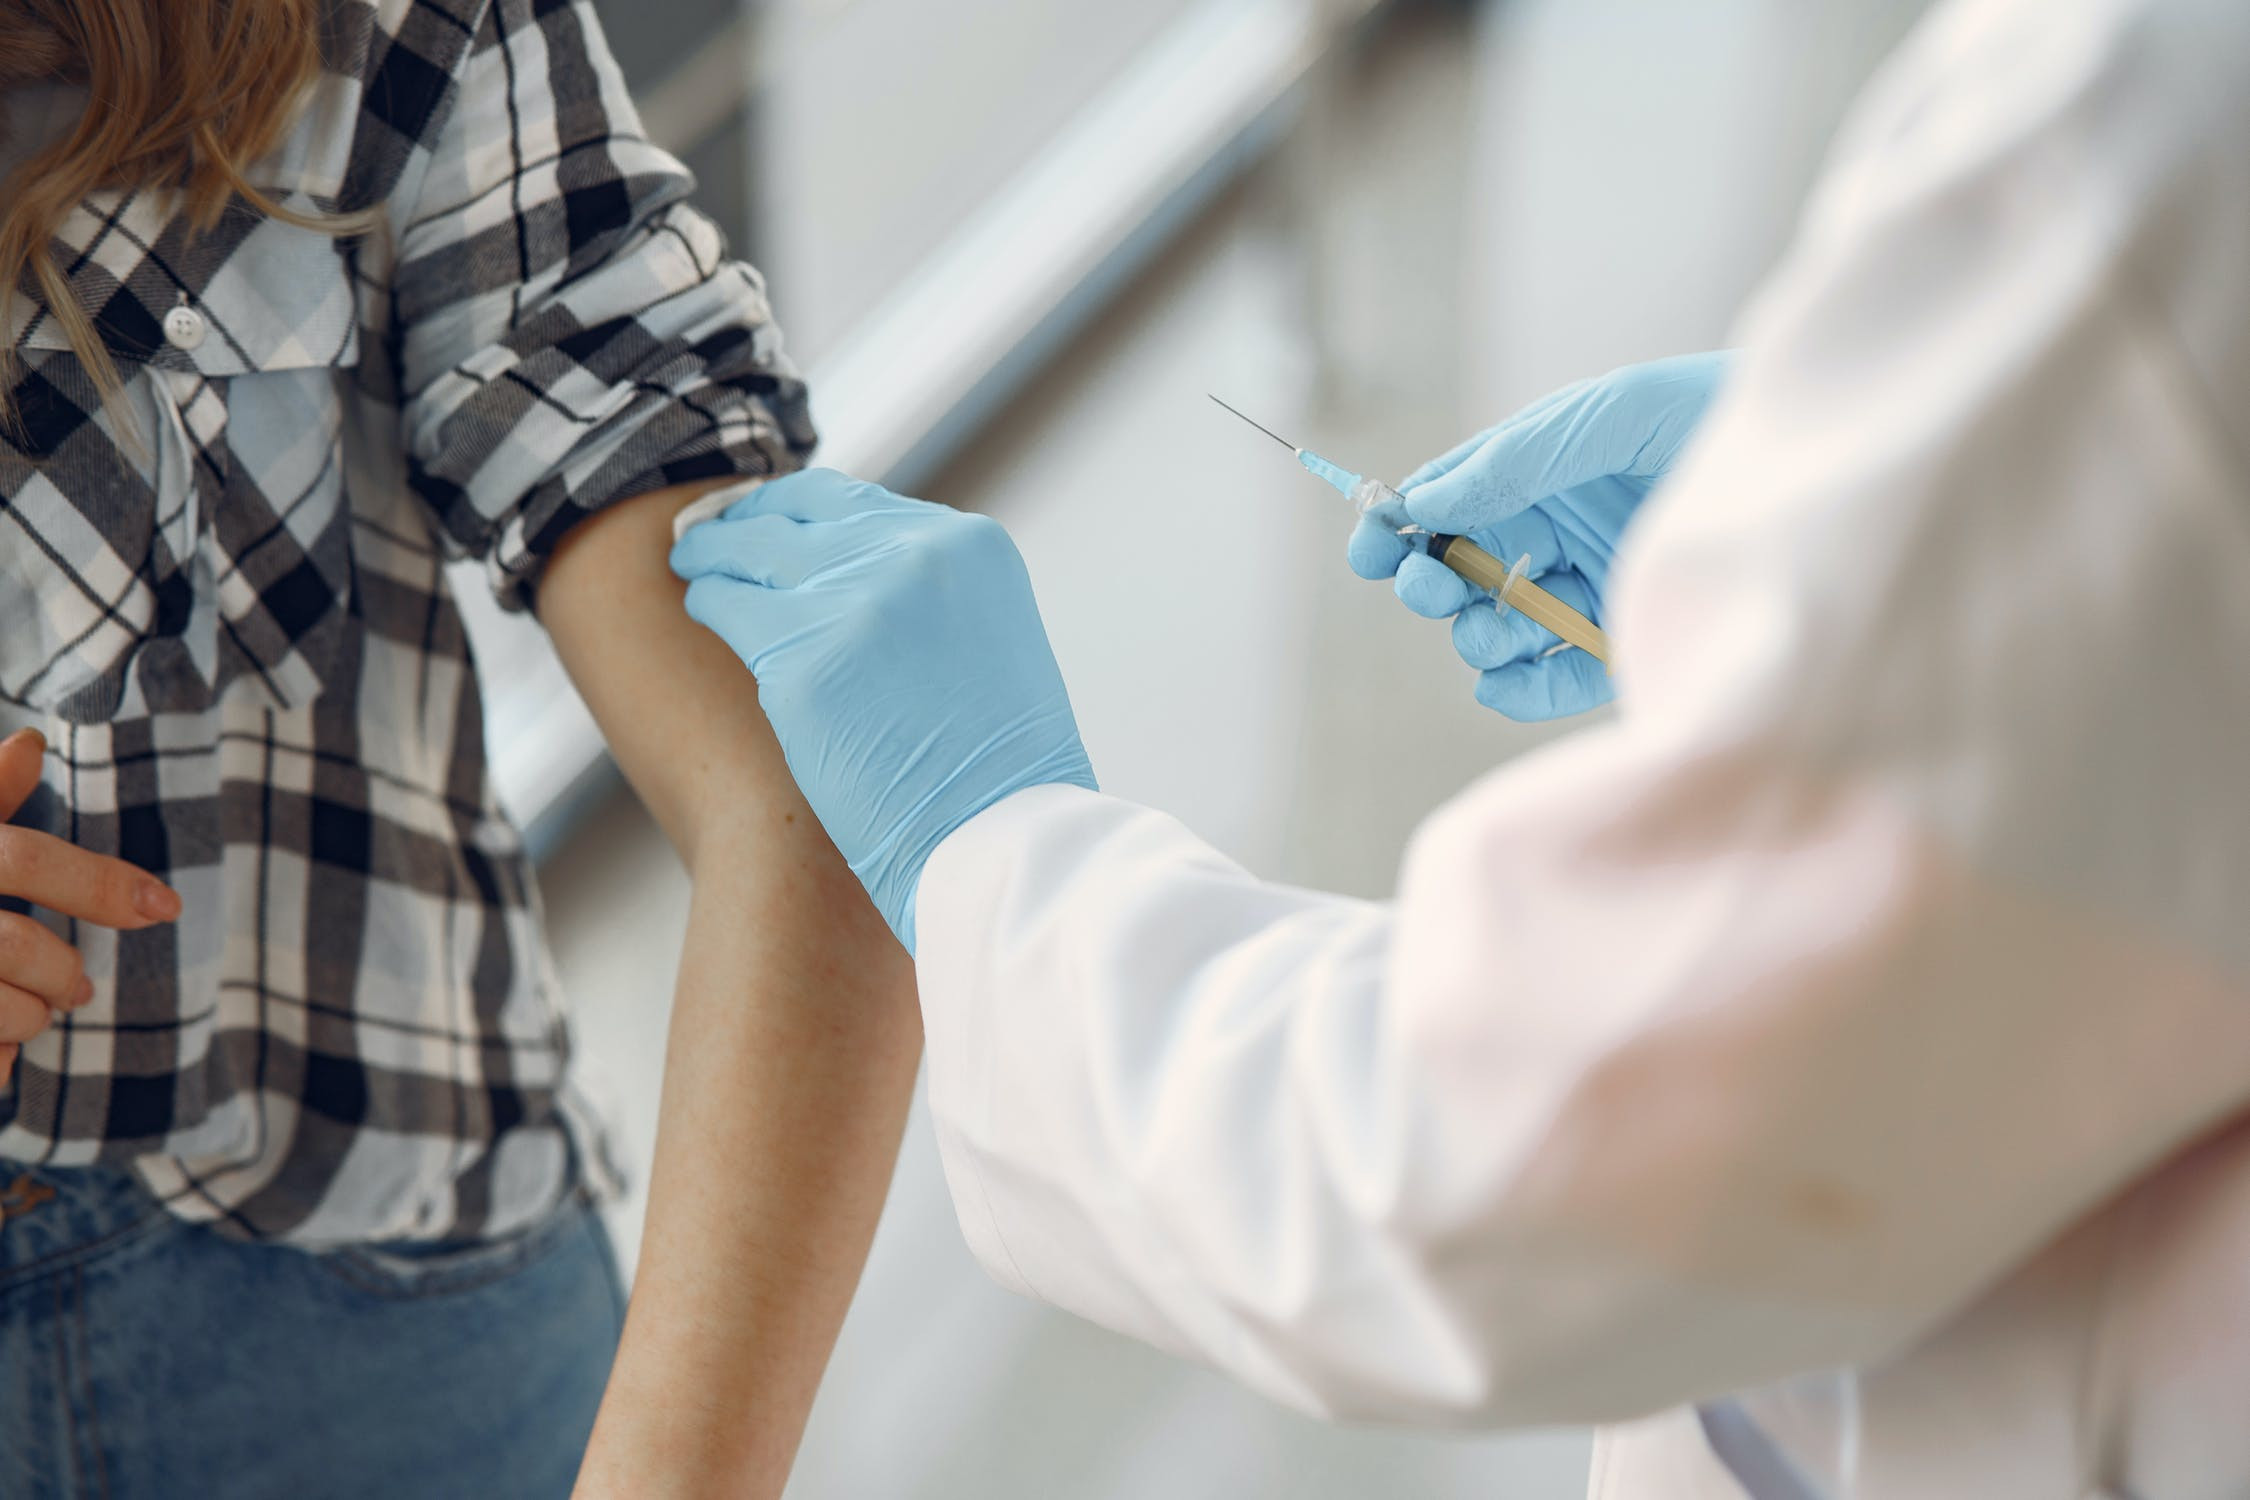 Κοροναϊός: Οι νεφροπαθείς σε αιμοκάθαρση αναπτύσσουν λιγότερα αντισώματα μετά τον εμβολιασμό τους